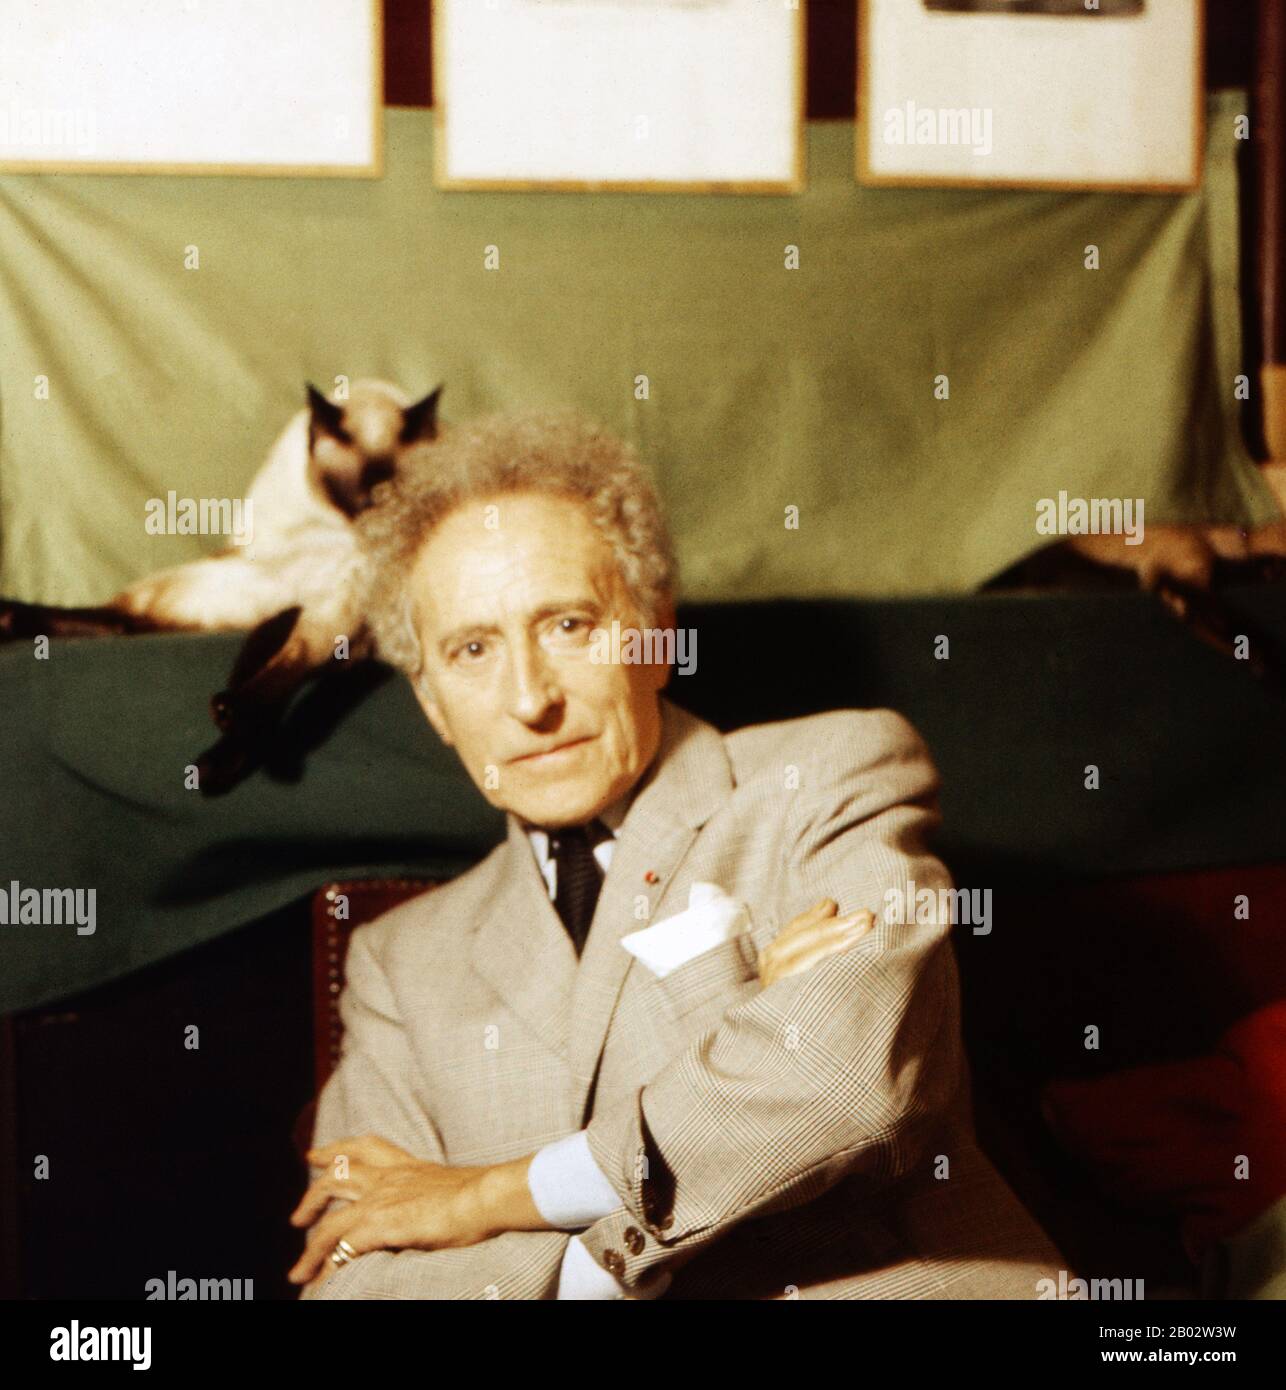 Jean Cocteau, französischer Schriftsteller, Regisseur und Maler, in einem  Atelier in Paris, Frankreich um 1960. Der französische Autor, Regisseur und  Maler Jean Cocteau in seinem Atelier n Paris, Frankreich um 1960  Stockfotografie - Alamy